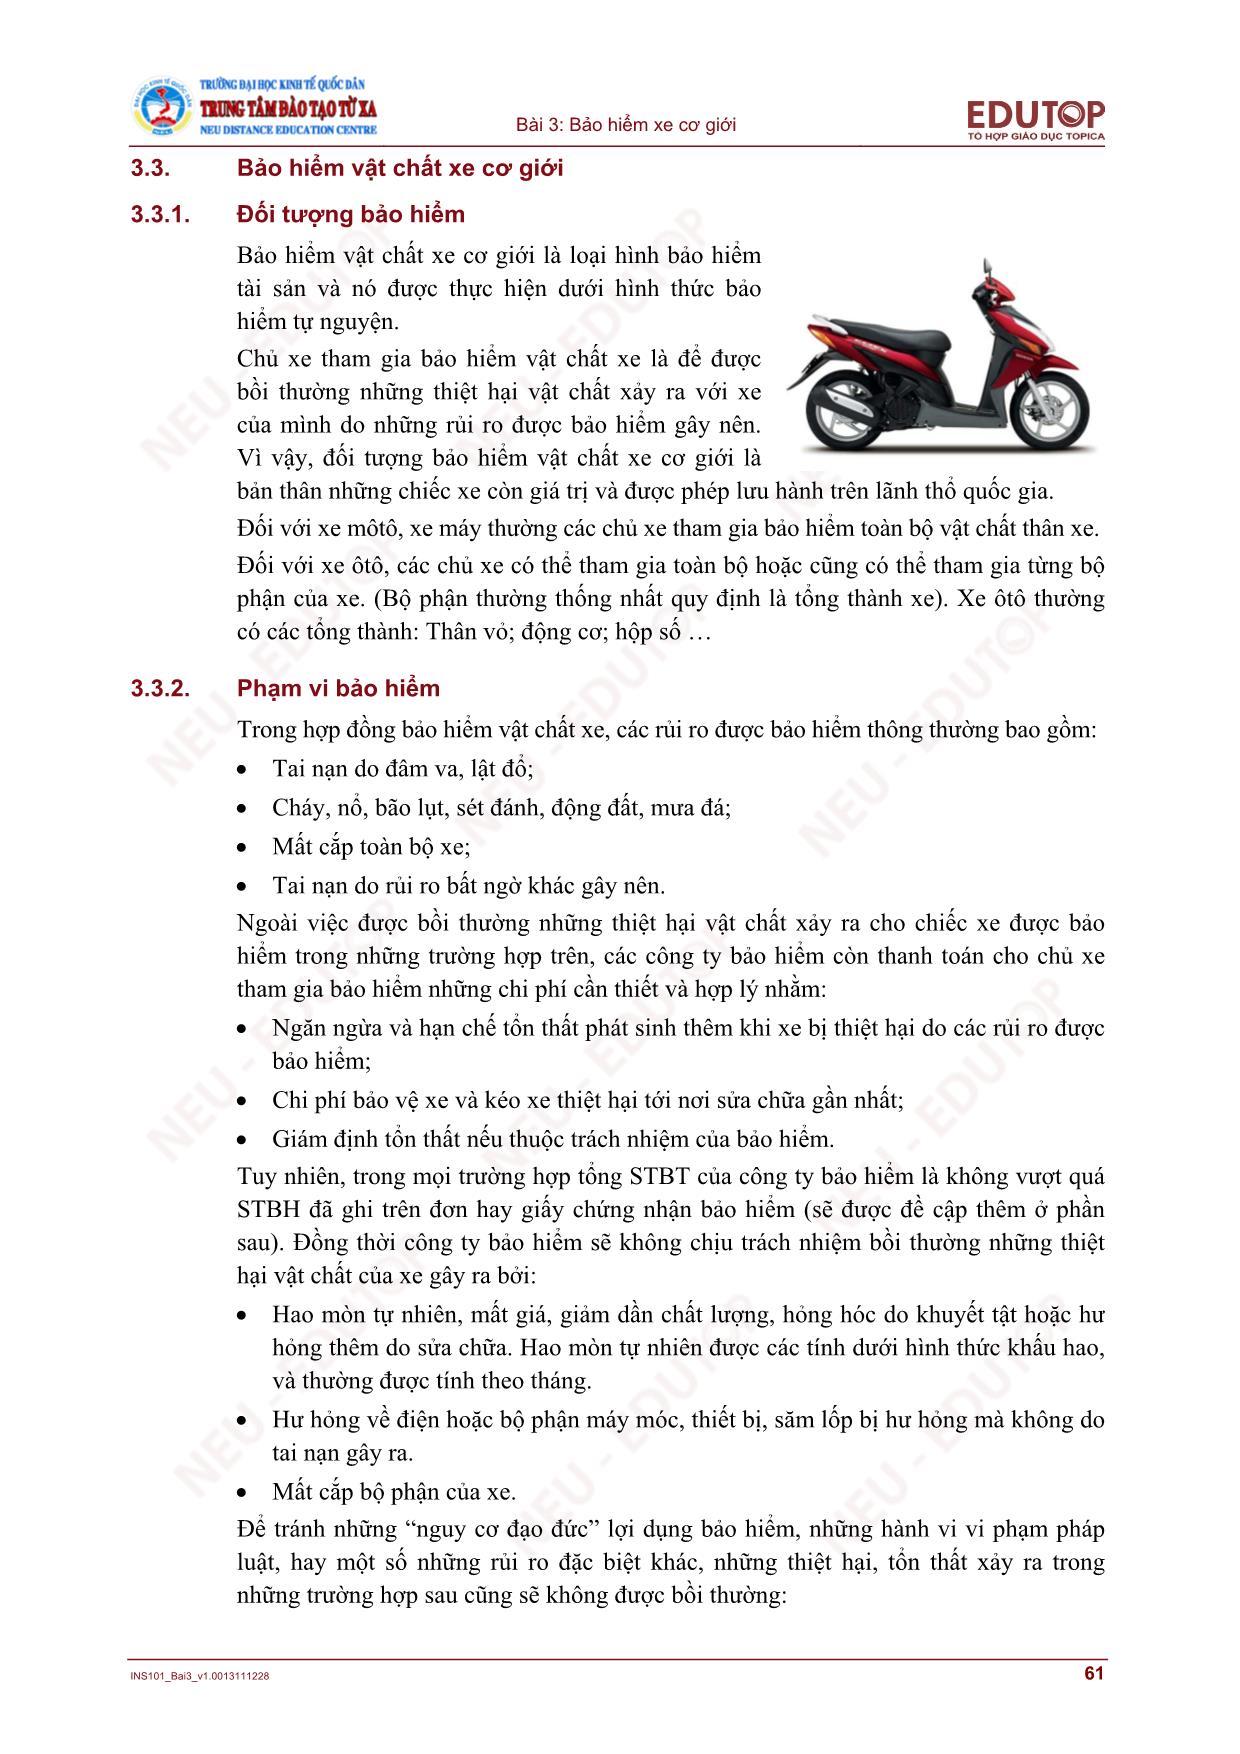 Bài giảng Bảo hiểm thương mại - Bài 3, Phần 2: Bảo hiểm xe cơ giới - Nguyễn Thị Lệ Huyền trang 7